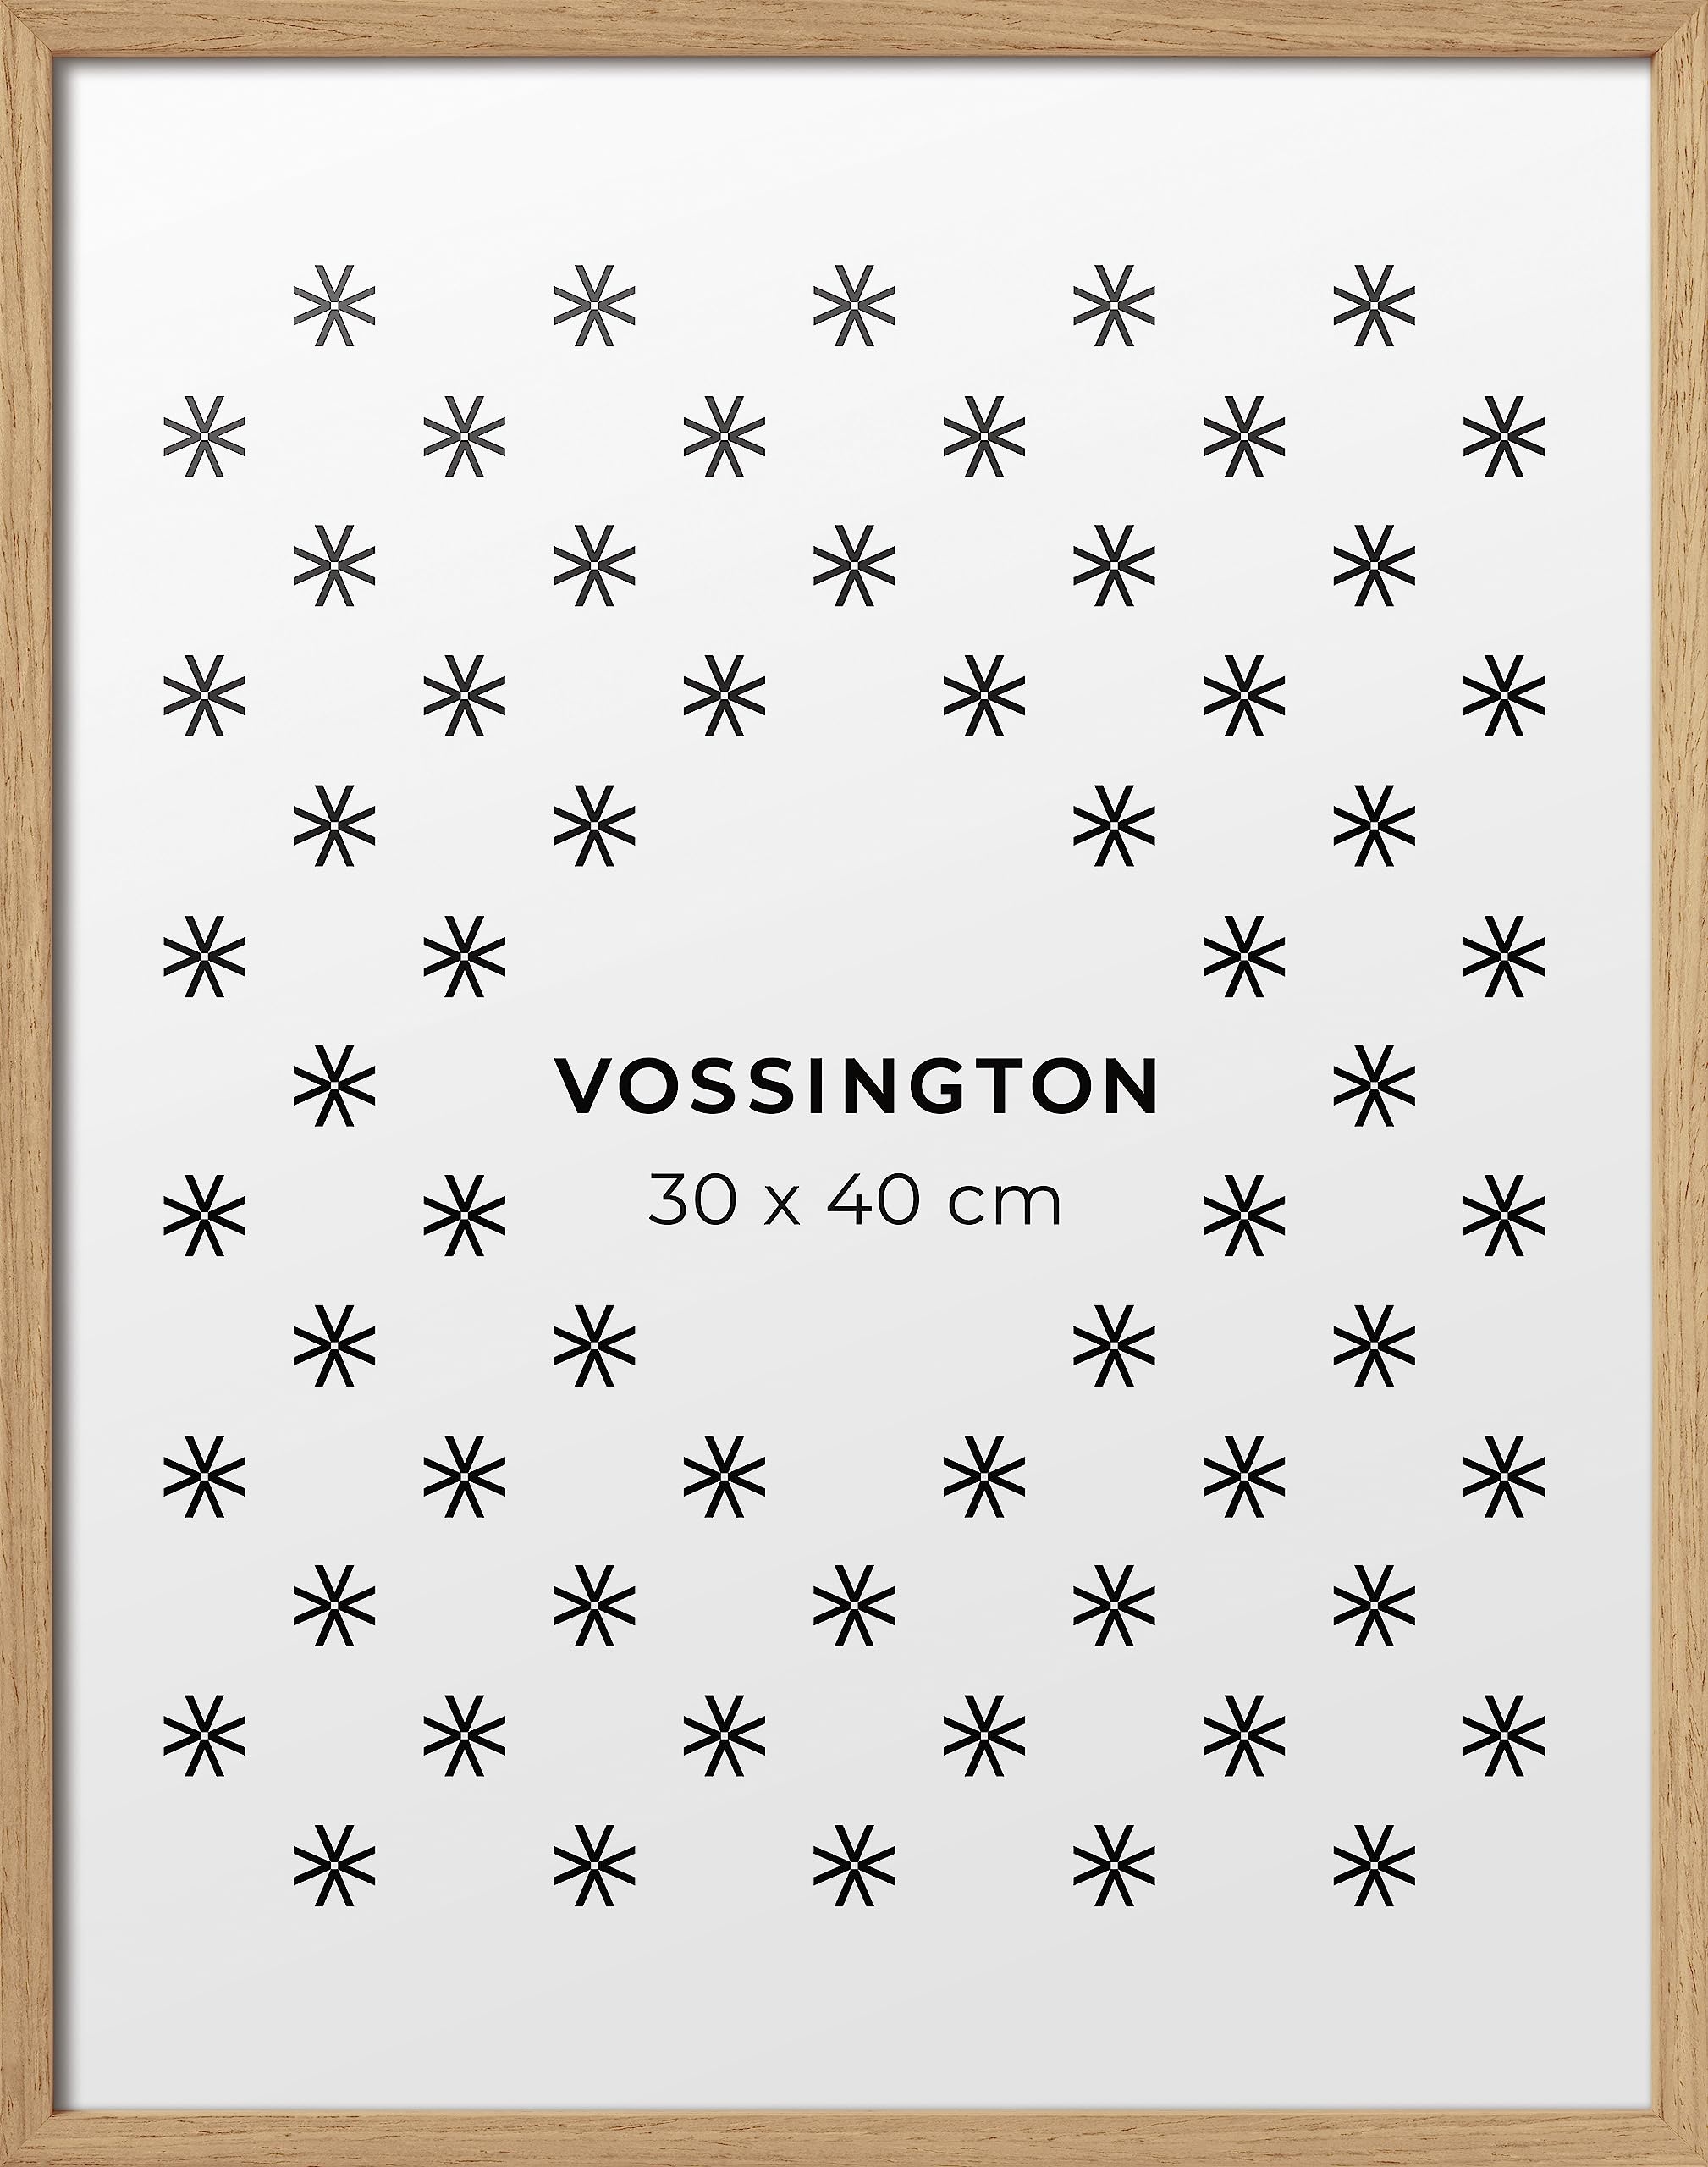 Vossington Bilderrahmen 30x40 Eiche - Holz - Modernes und schmales Design - Rahmen für 1 Bild, Foto, Poster oder Puzzle im Format 30 x 40 cm (40x30 cm)